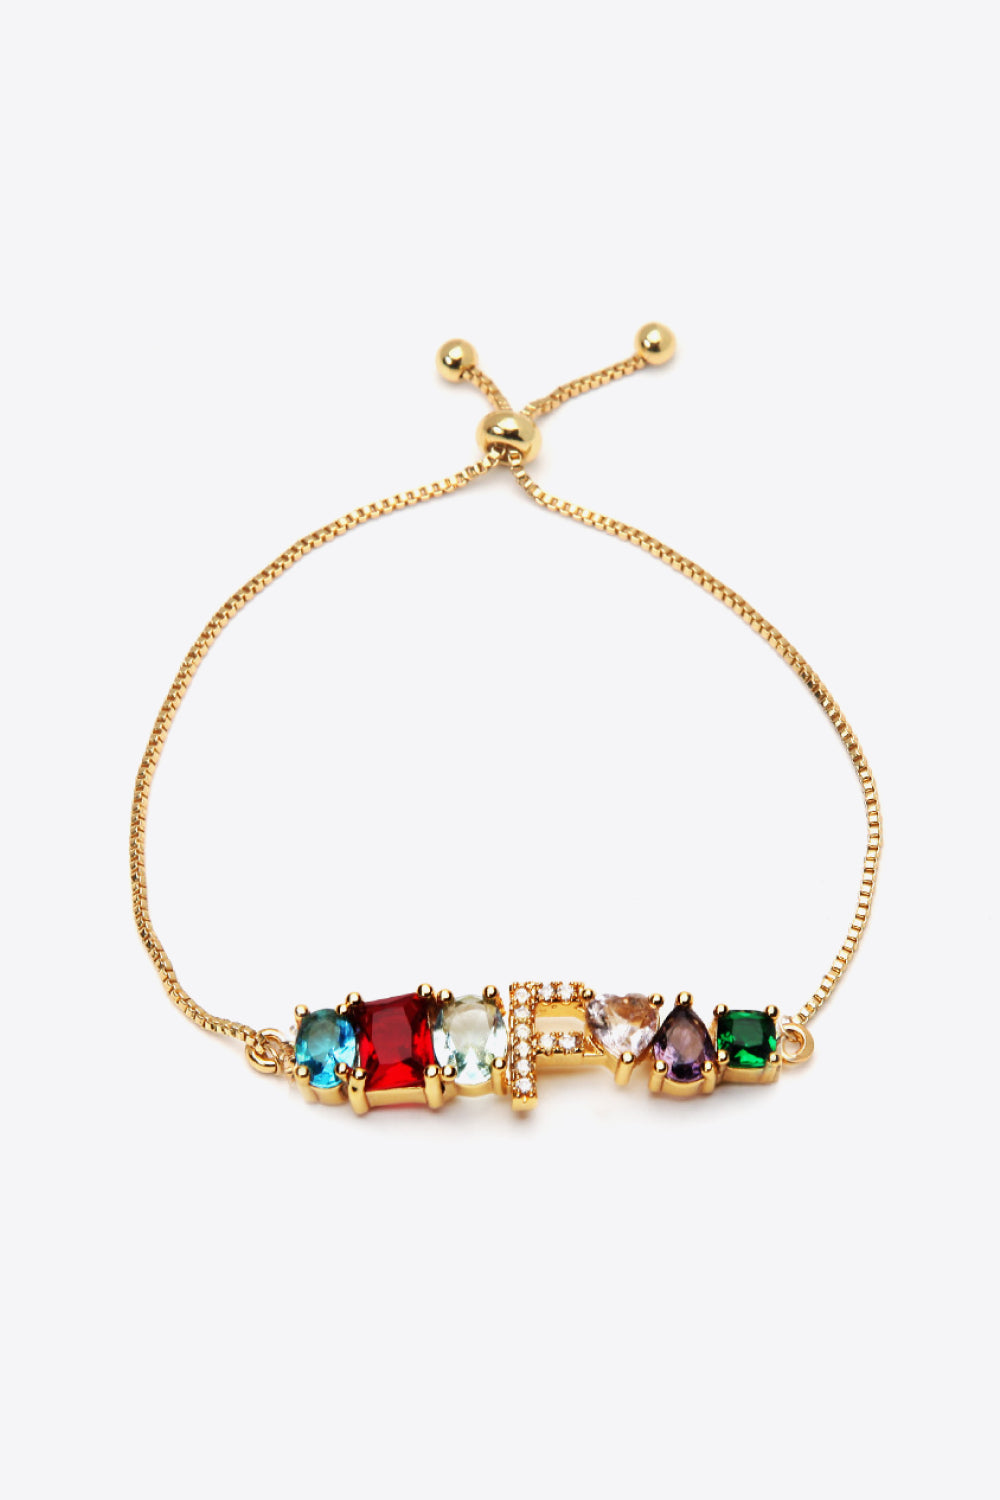 K to T Zircon Bracelet - Women’s Jewelry - Bracelets - 16 - 2024